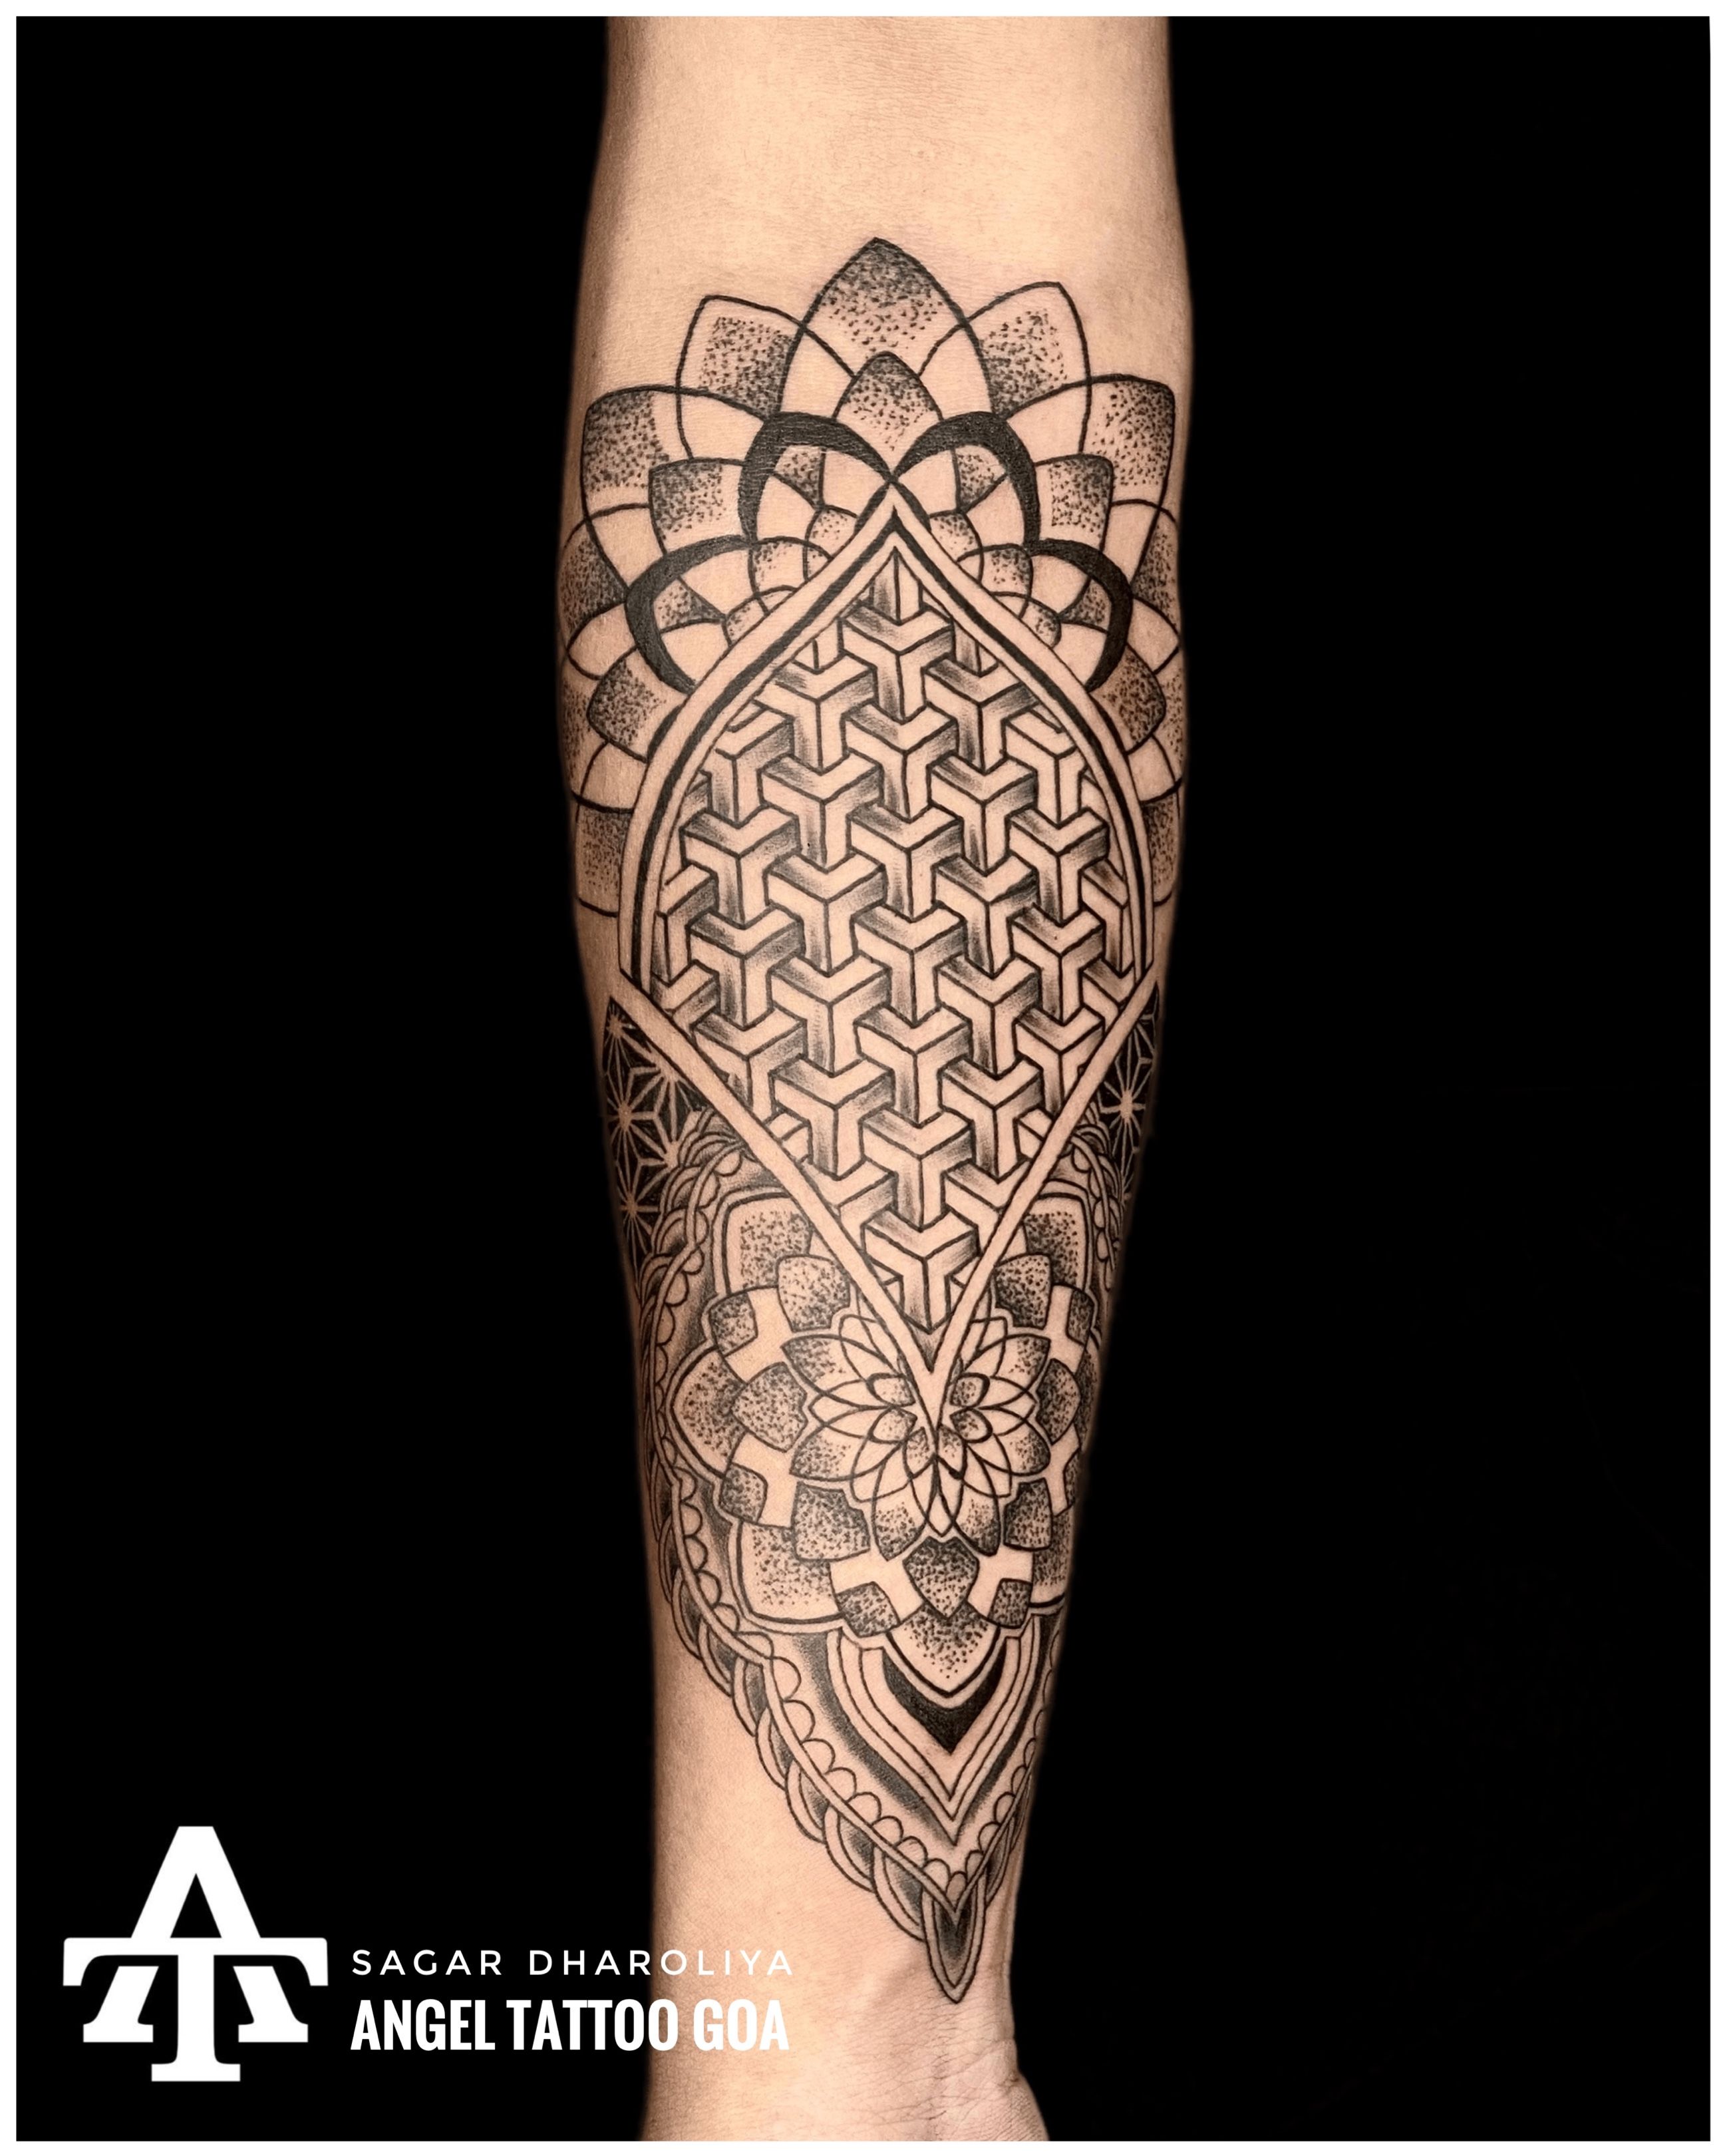 Baby Angel Tattoo done by Mukesh Waghela at Moksha Tattoo Studio Goa India.  - Goa Tattoo Center | Baby angel tattoo, Angel tattoo, Tattoo studio